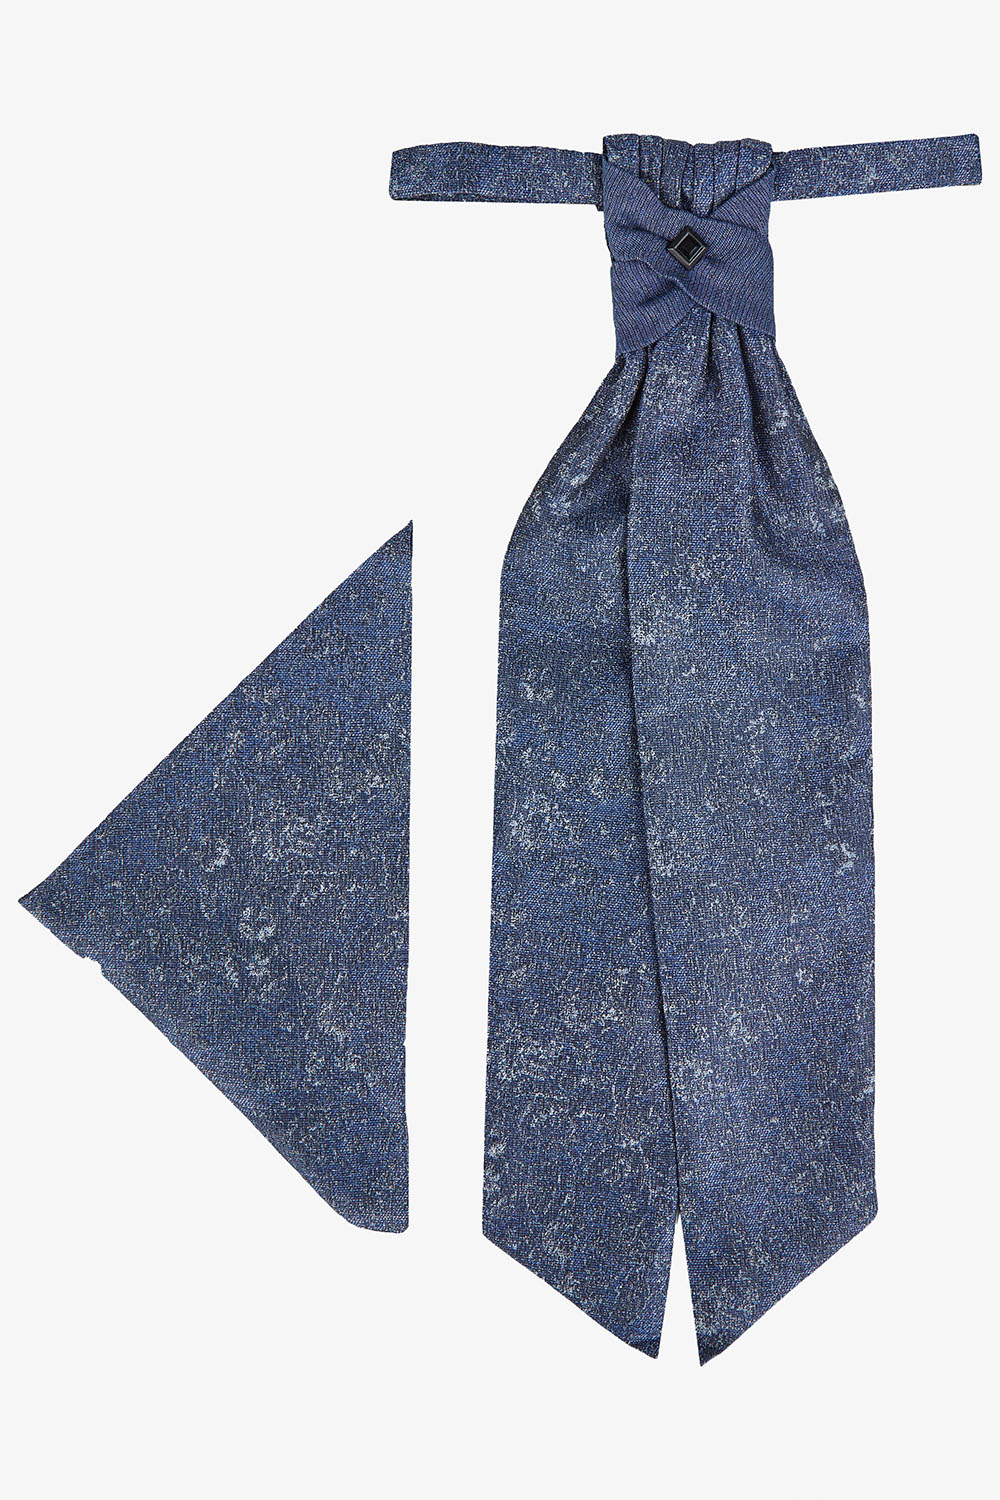 TZIACCO márványkék francia nyakkendő szett 521203-30